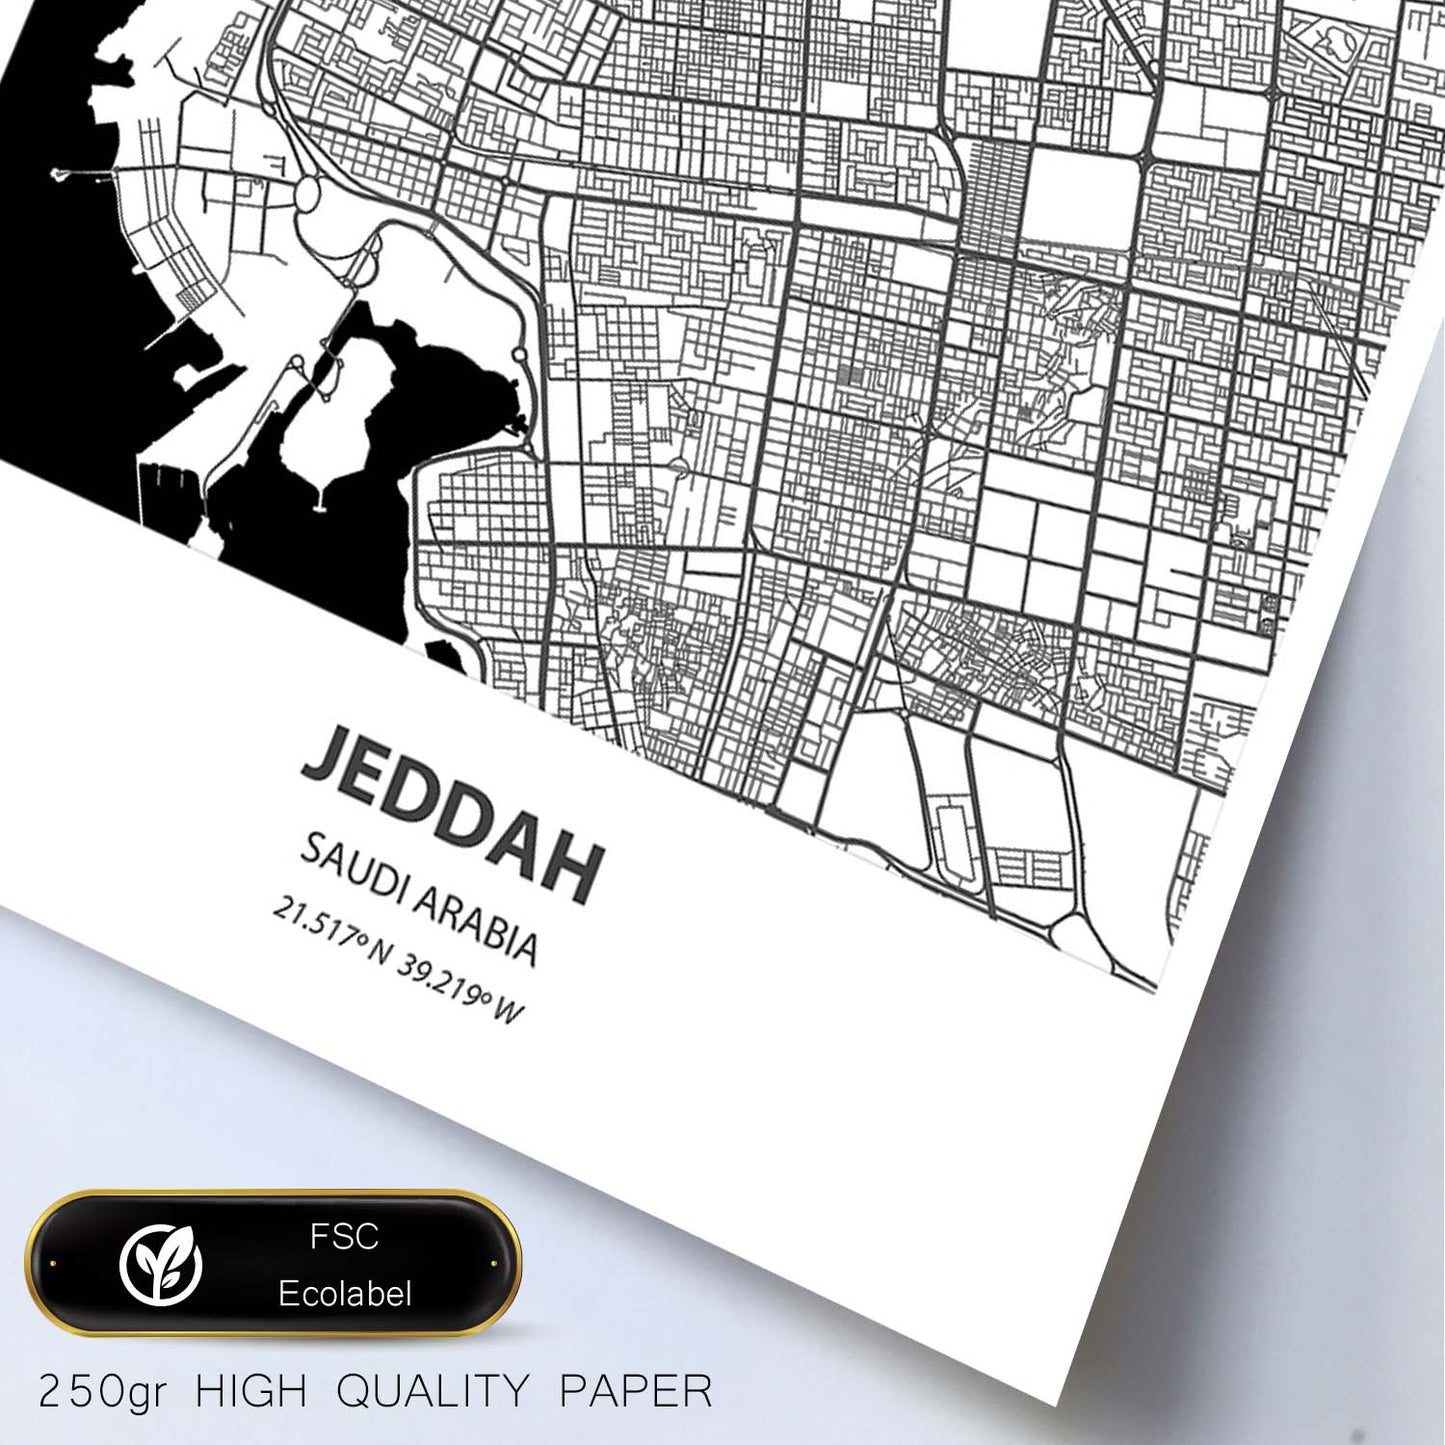 Poster con mapa de Jeddah - Arabia Saudi. Láminas de ciudades de Oriente Medio con mares y ríos en color negro.-Artwork-Nacnic-Nacnic Estudio SL